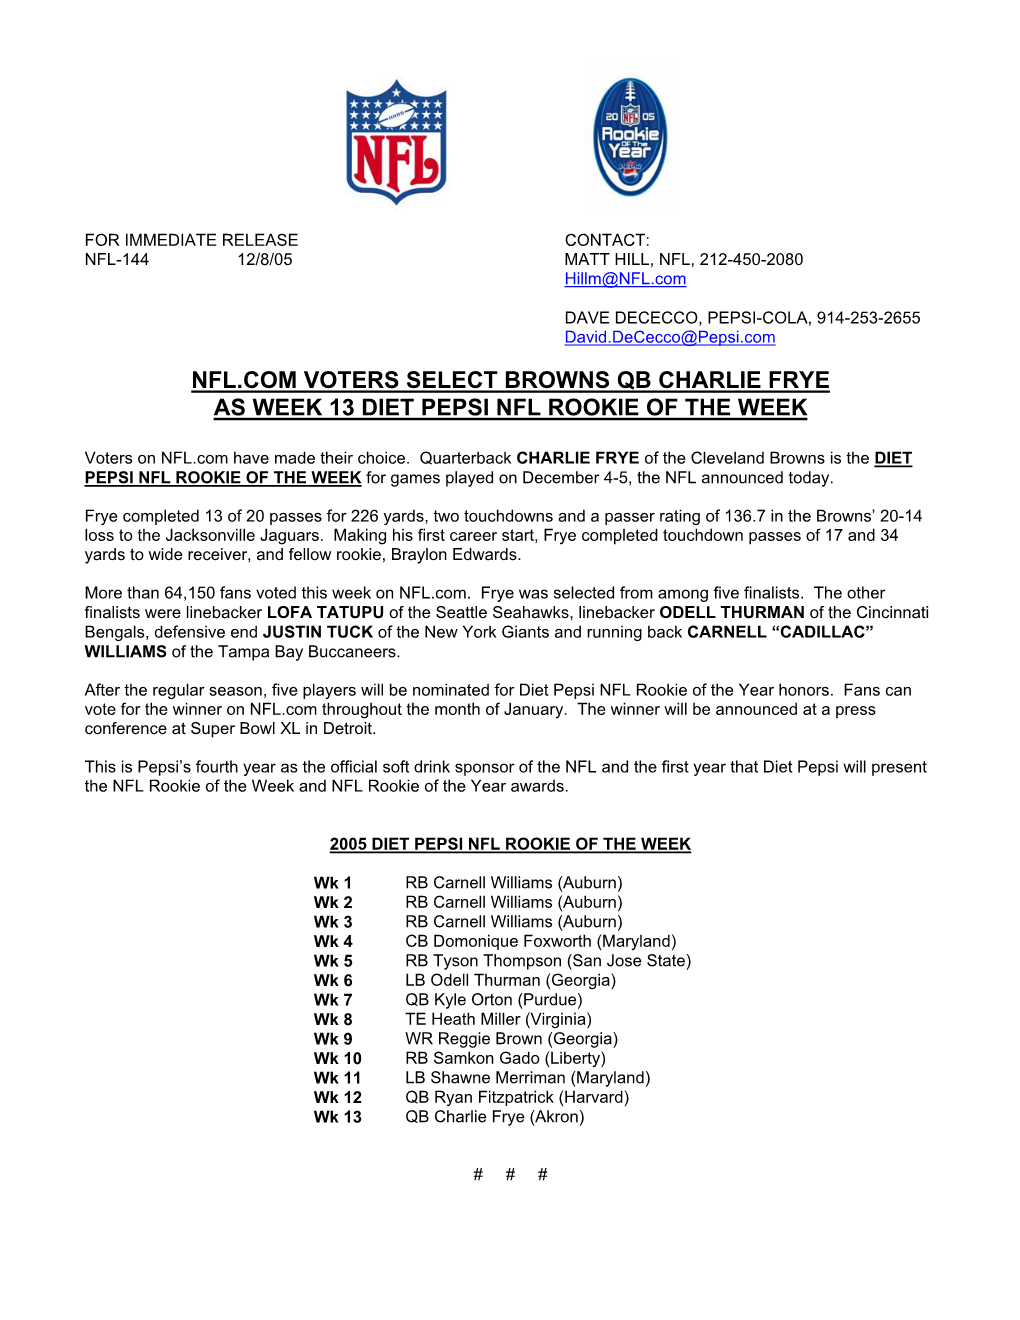 Nfl.Com Voters Select Browns Qb Charlie Frye As Week 13 Diet Pepsi Nfl Rookie of the Week